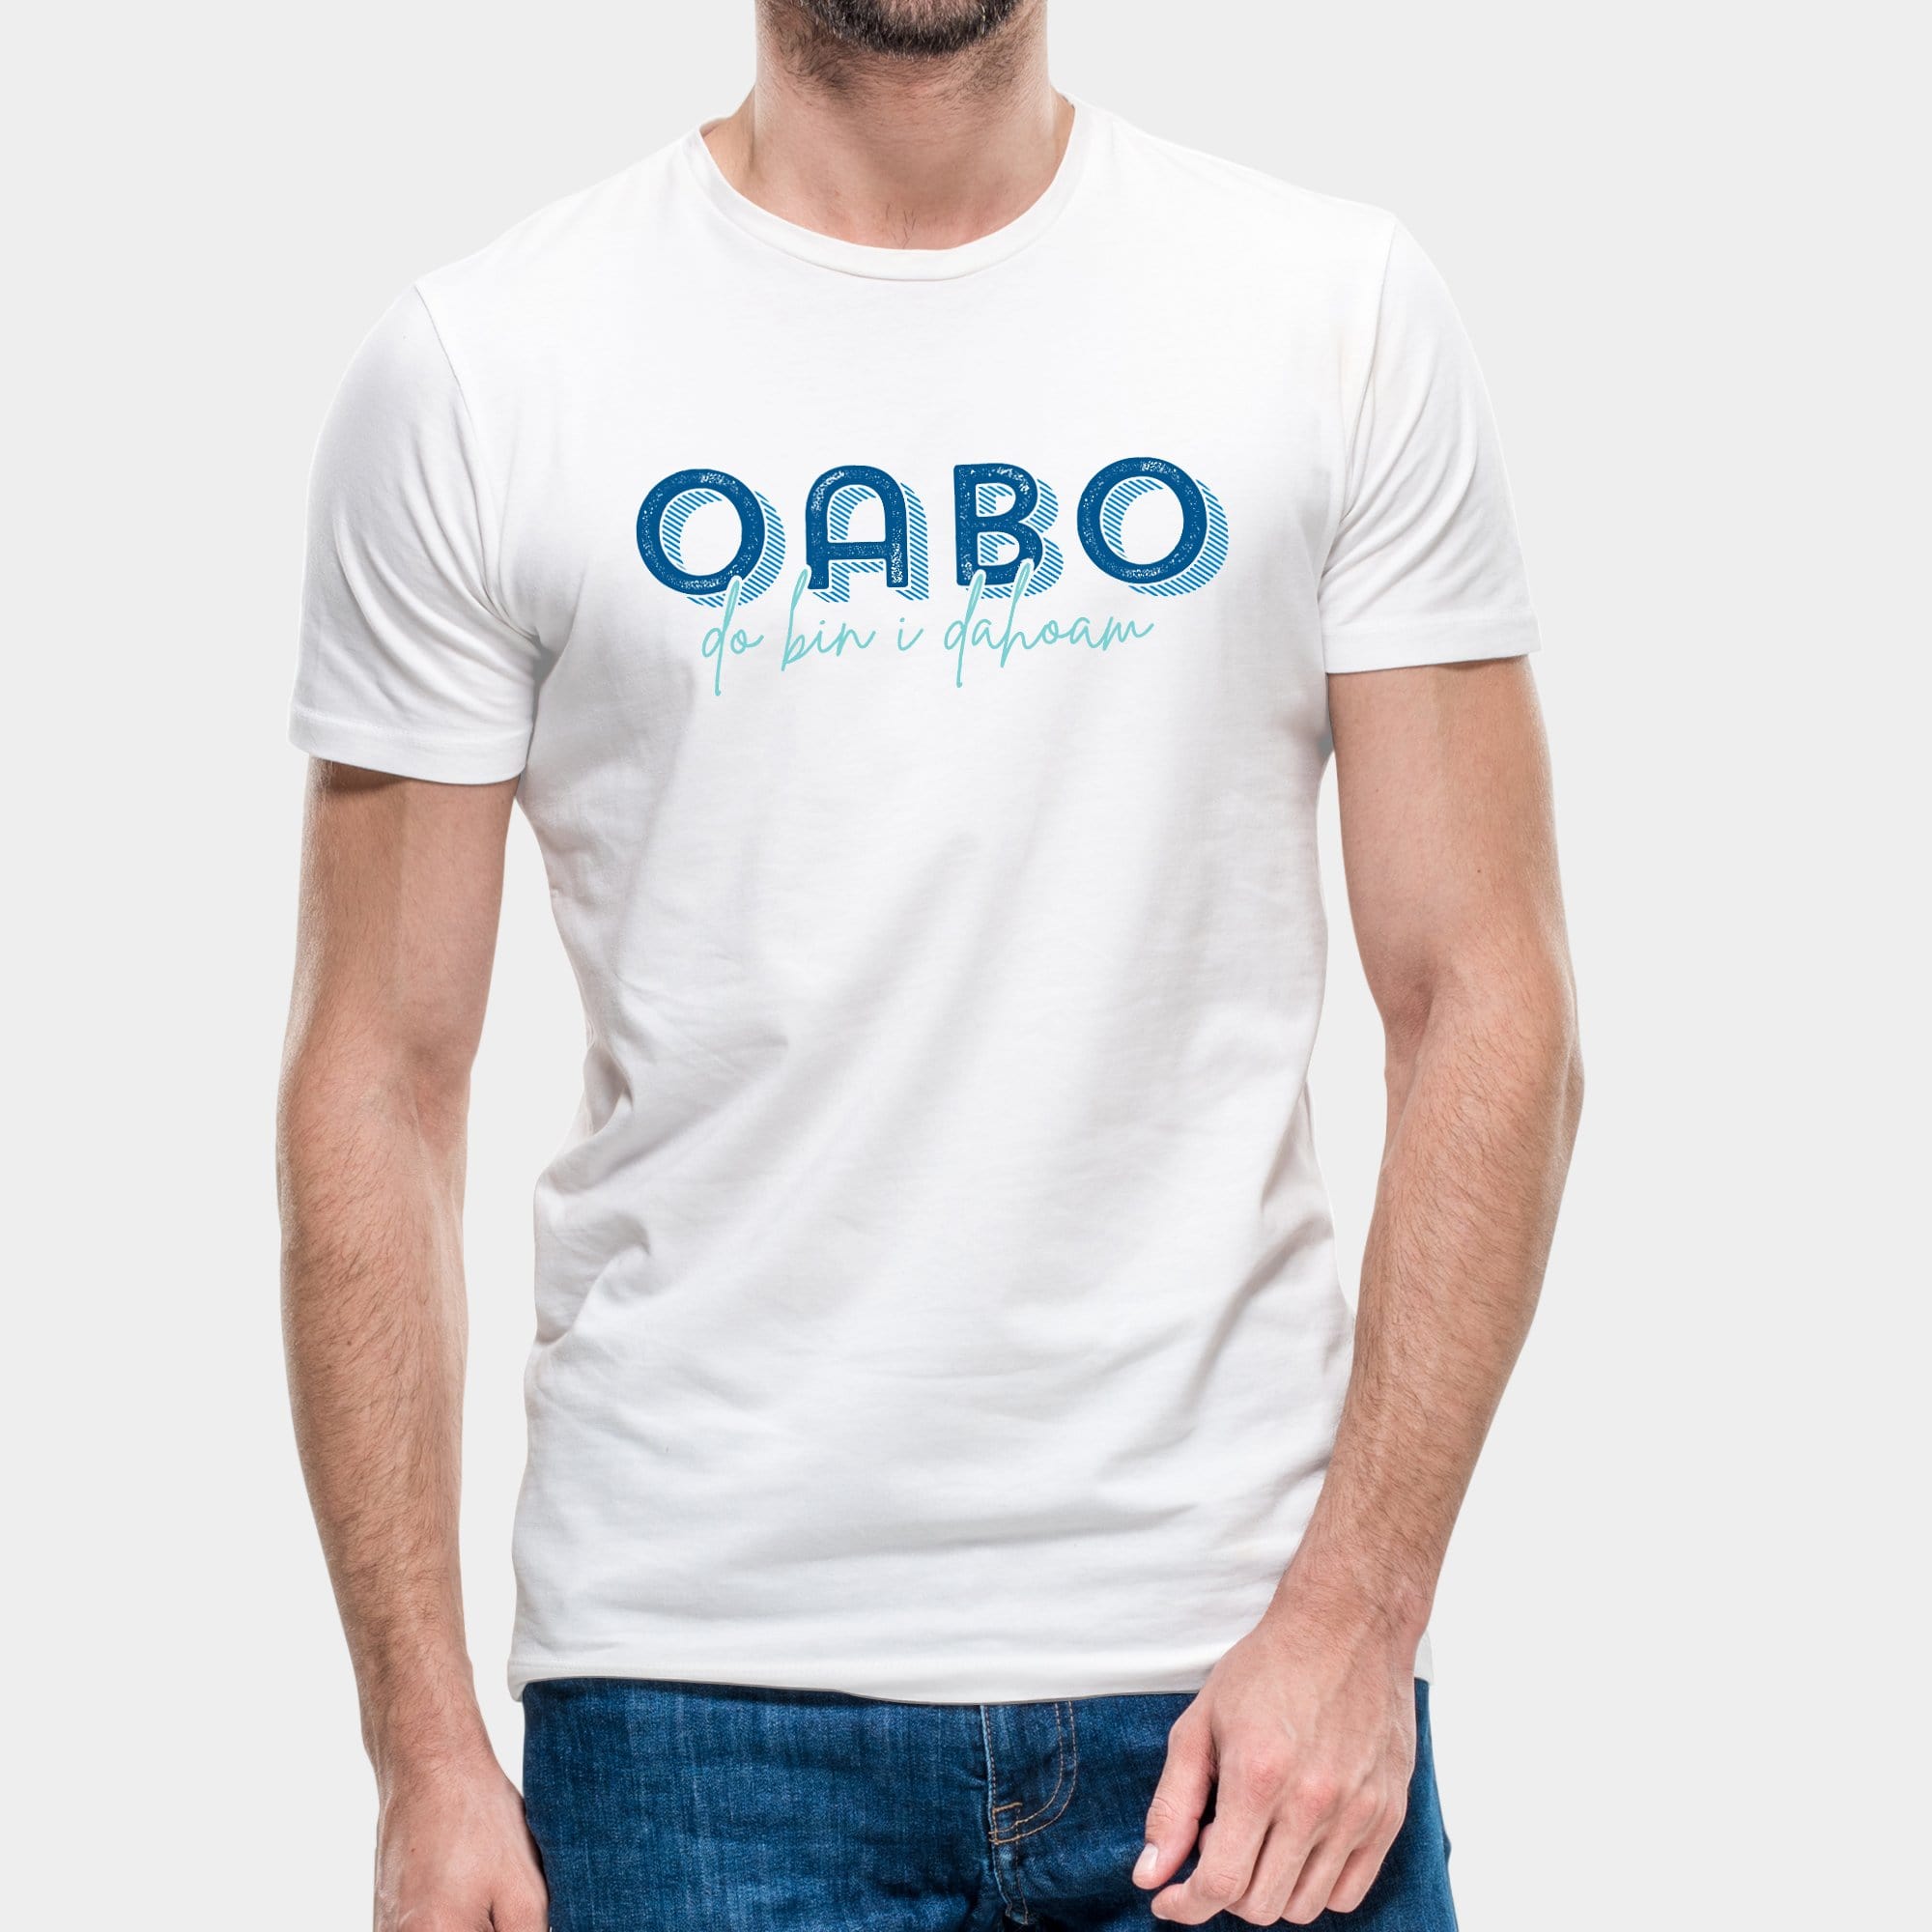 Projekt Herren-T-Shirt "Oabo" S / weiß - aus nachhaltiger und fairer Produktion